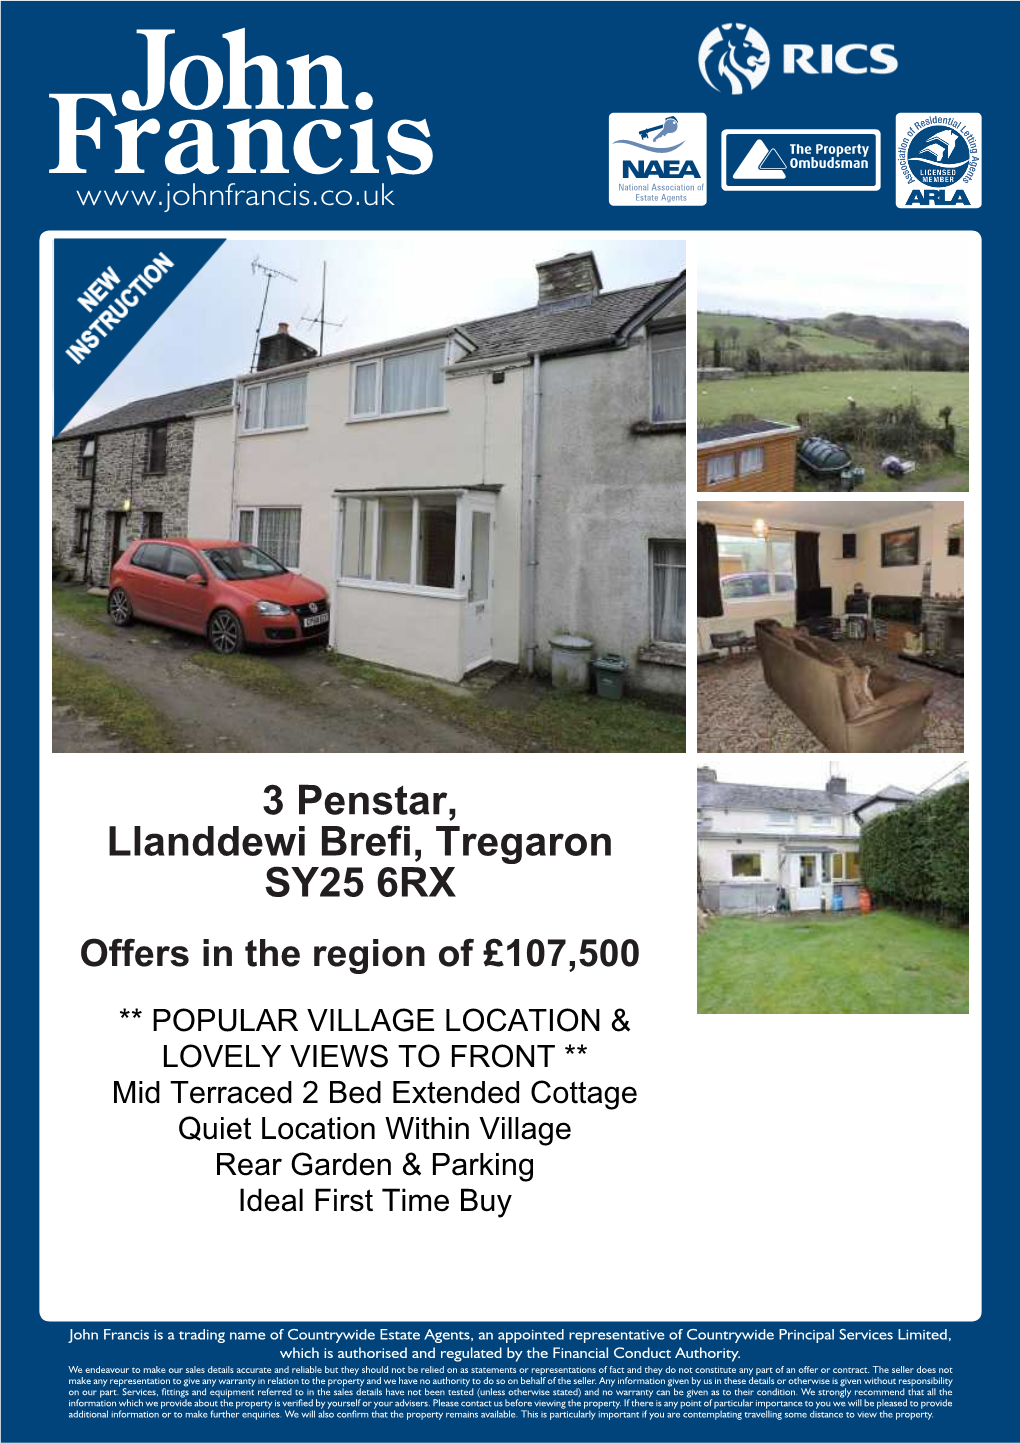 3 Penstar, Llanddewi Brefi, Tregaron SY25 6RX Offers in the Region of £107,500